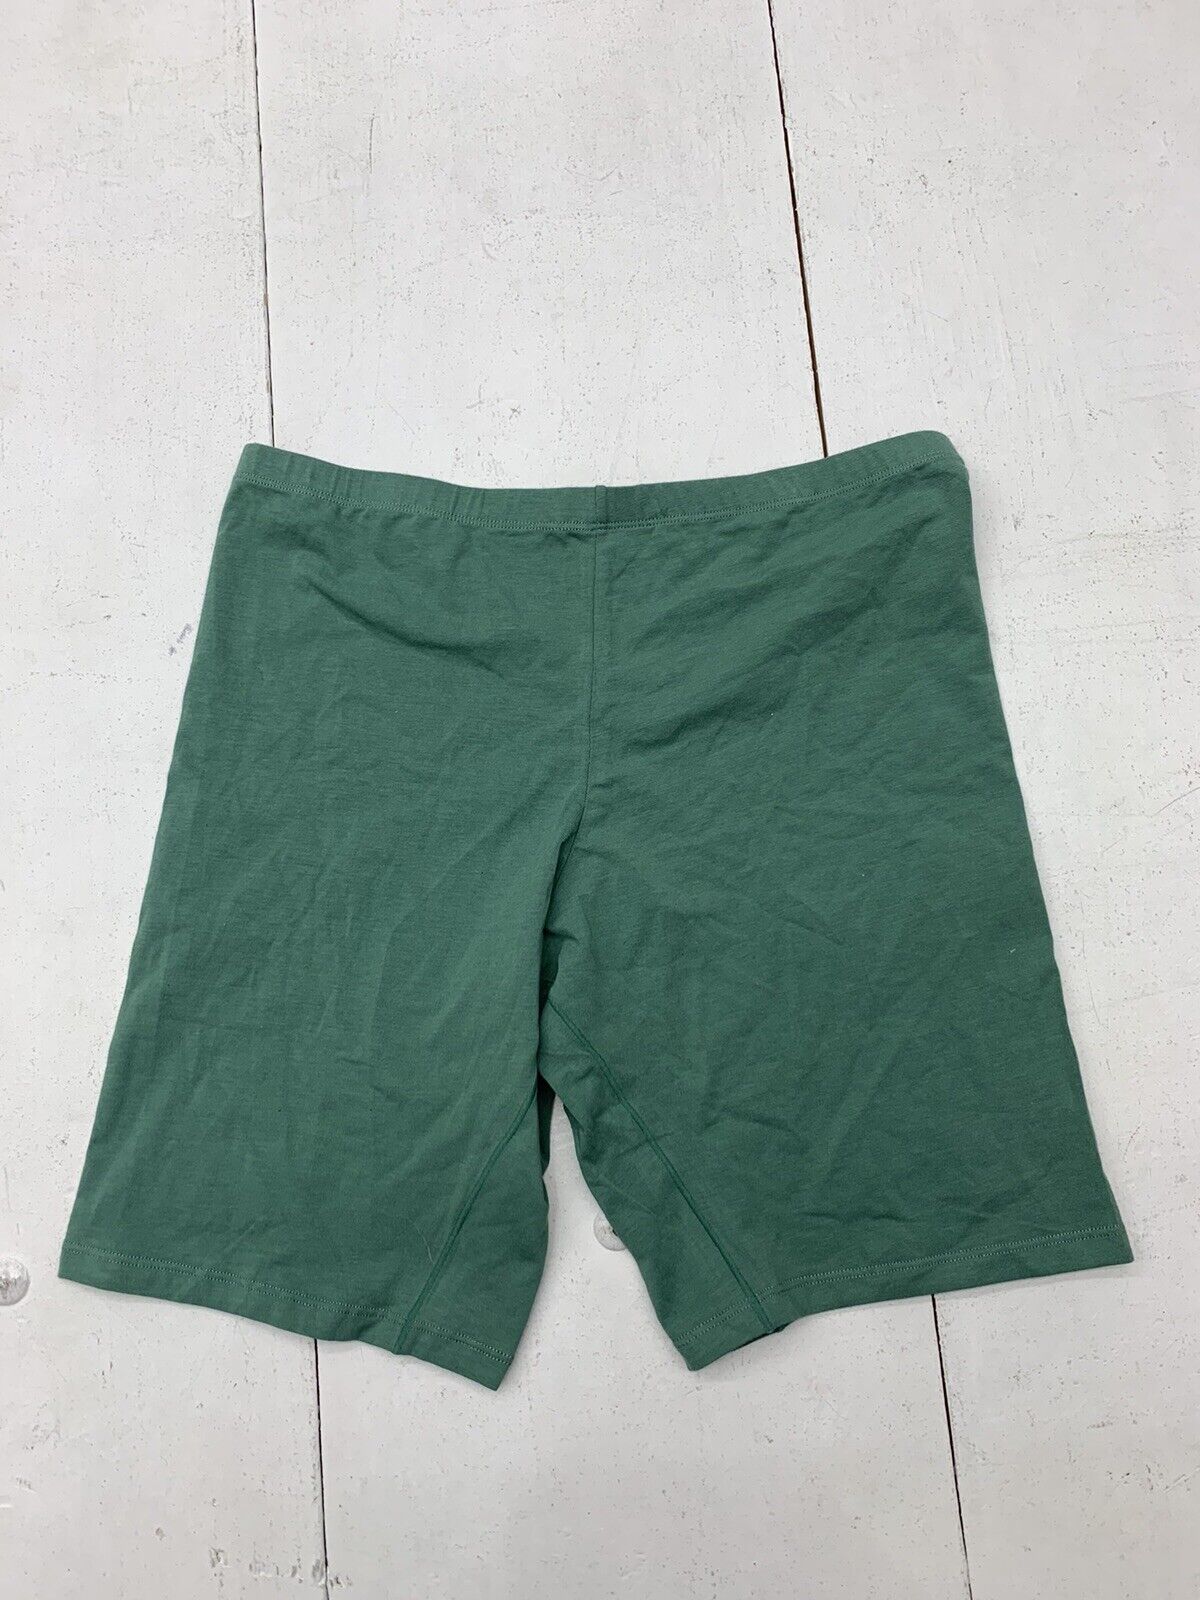 Wirarpa Womens Green Underwear Size XL - beyond exchange